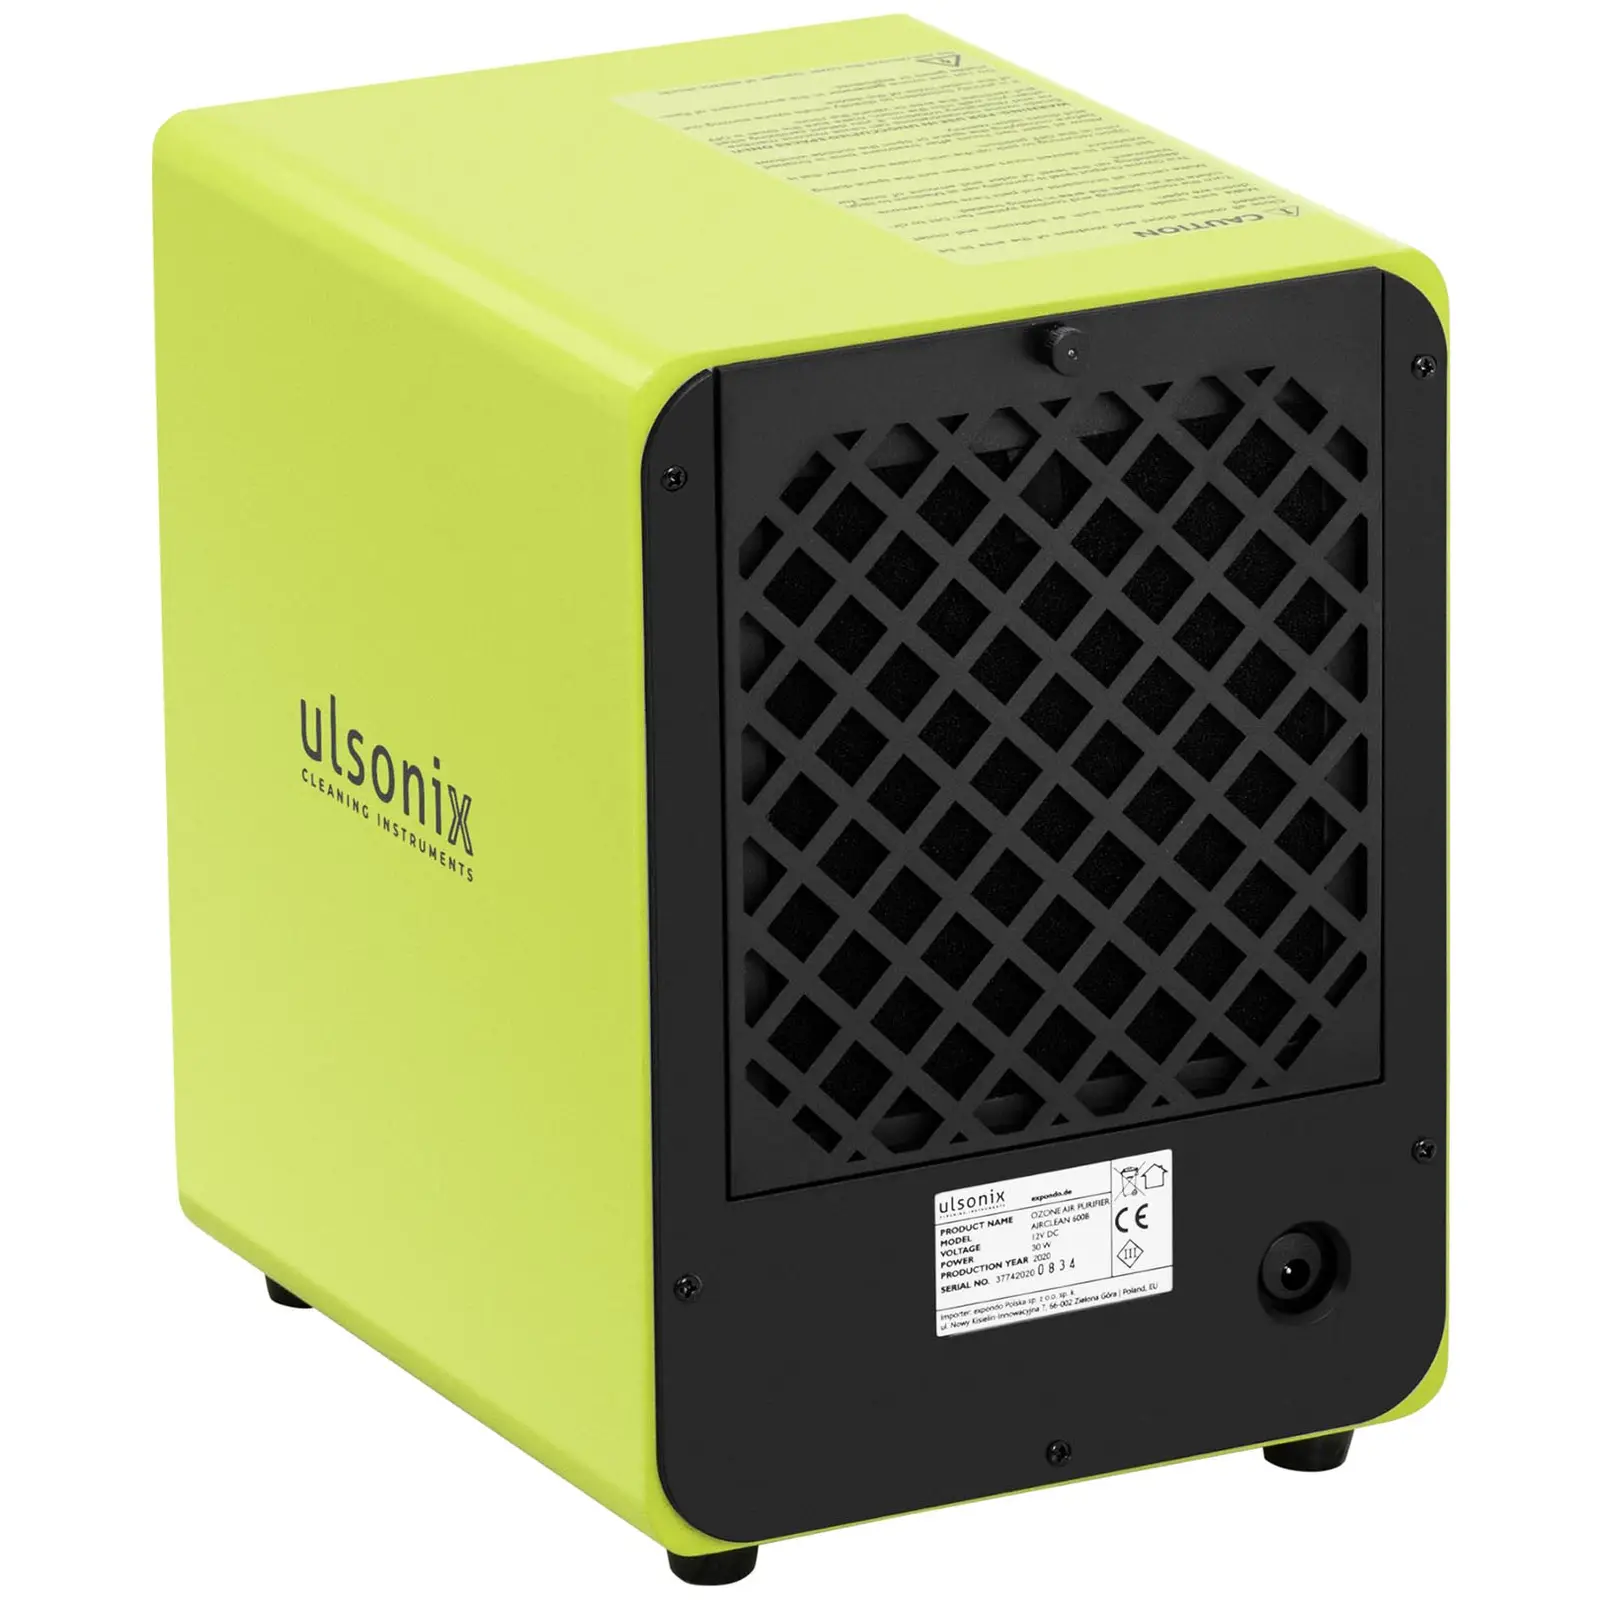 Generatore di ozono - 600 mg/h - 3 filtri - 27 W